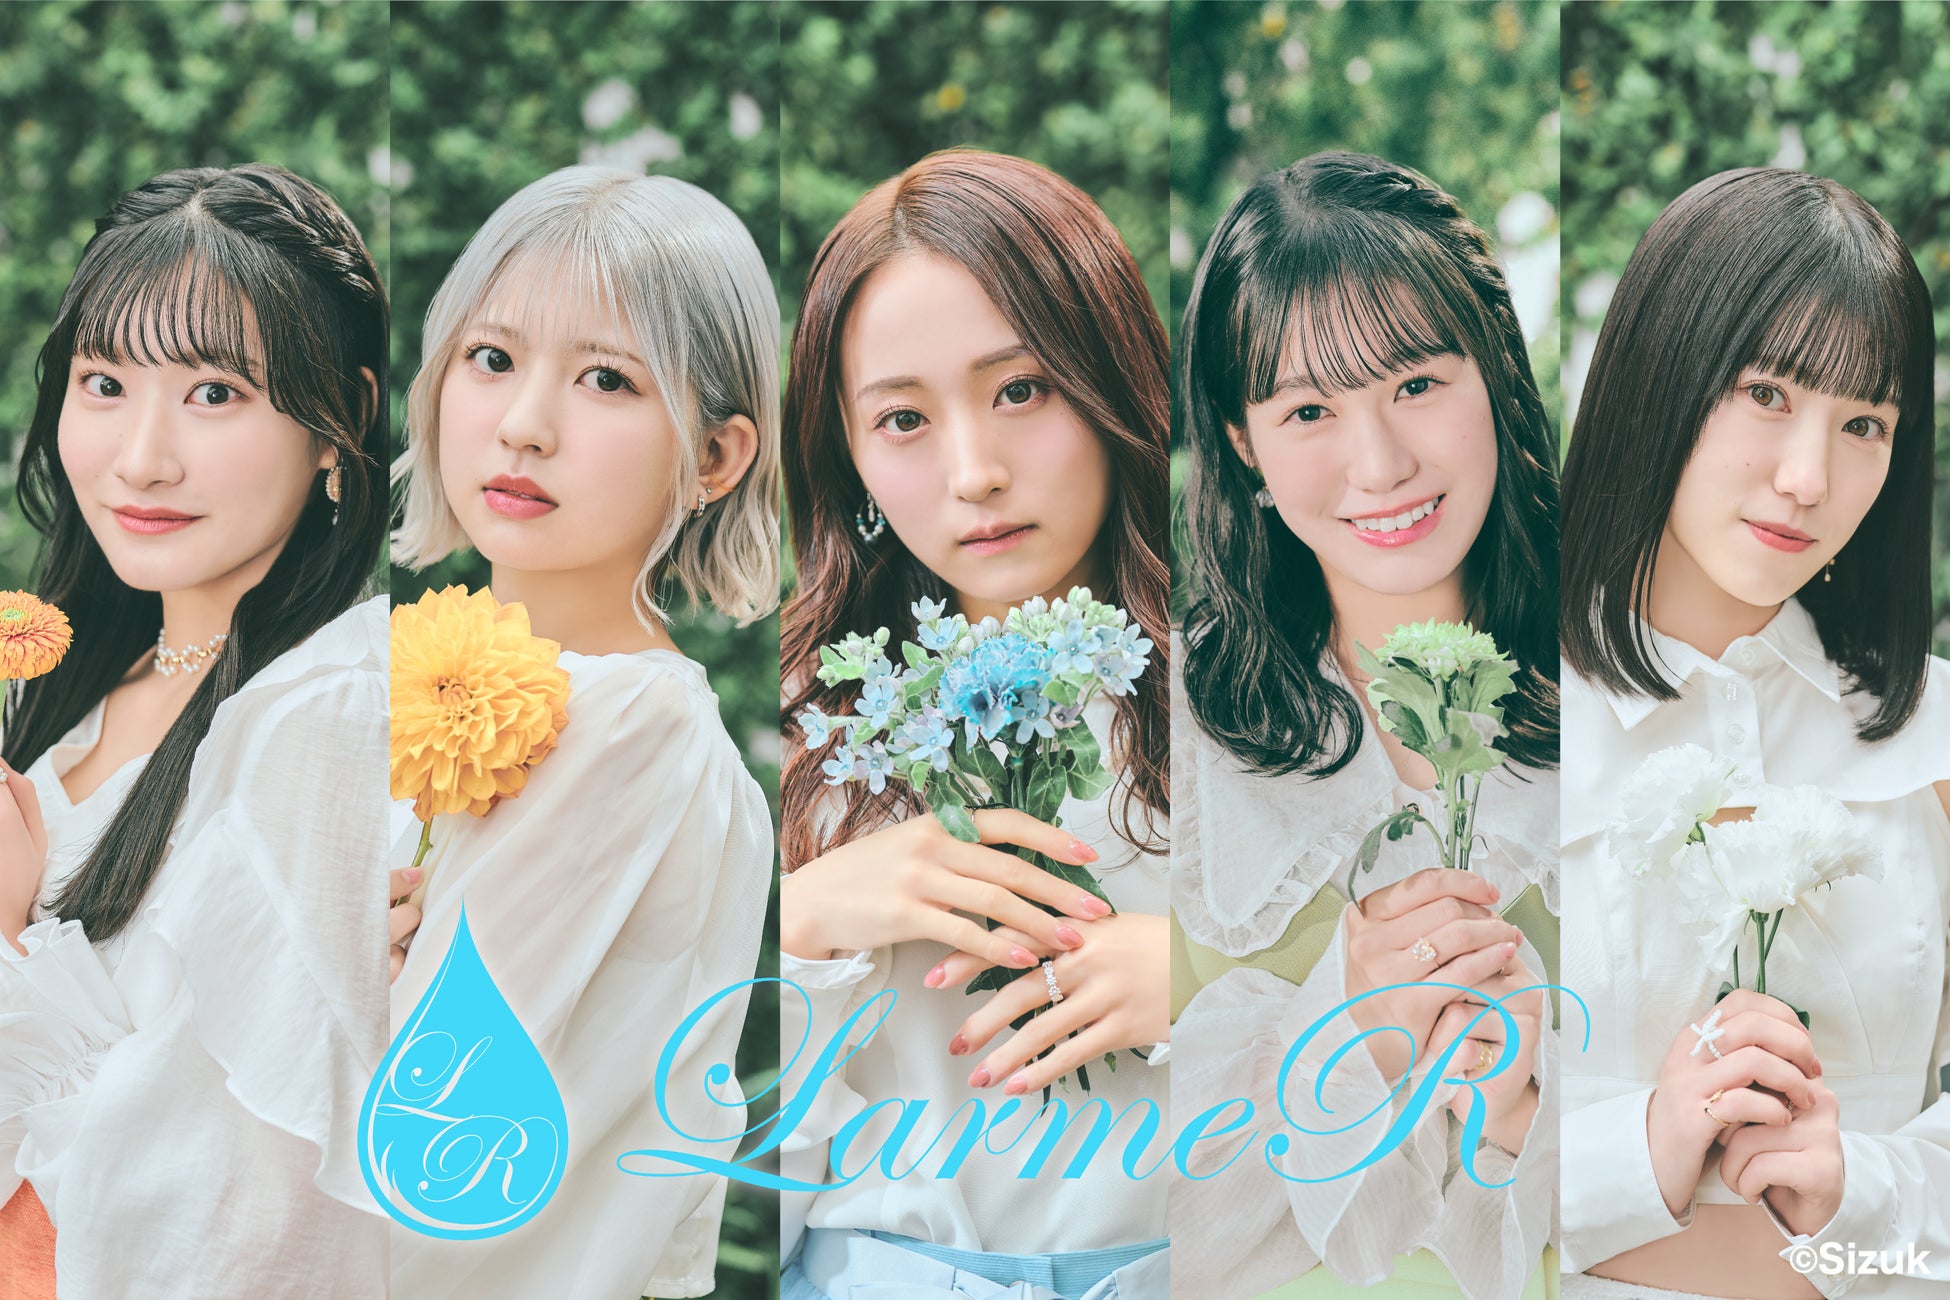 音楽プロデュース集団「Sizuk Entertainment」が結成した『水』をコンセプトとしたアイドルグループ『LarmeR(ラルメール)』。本日、グループ名と所属メンバーを解禁！！